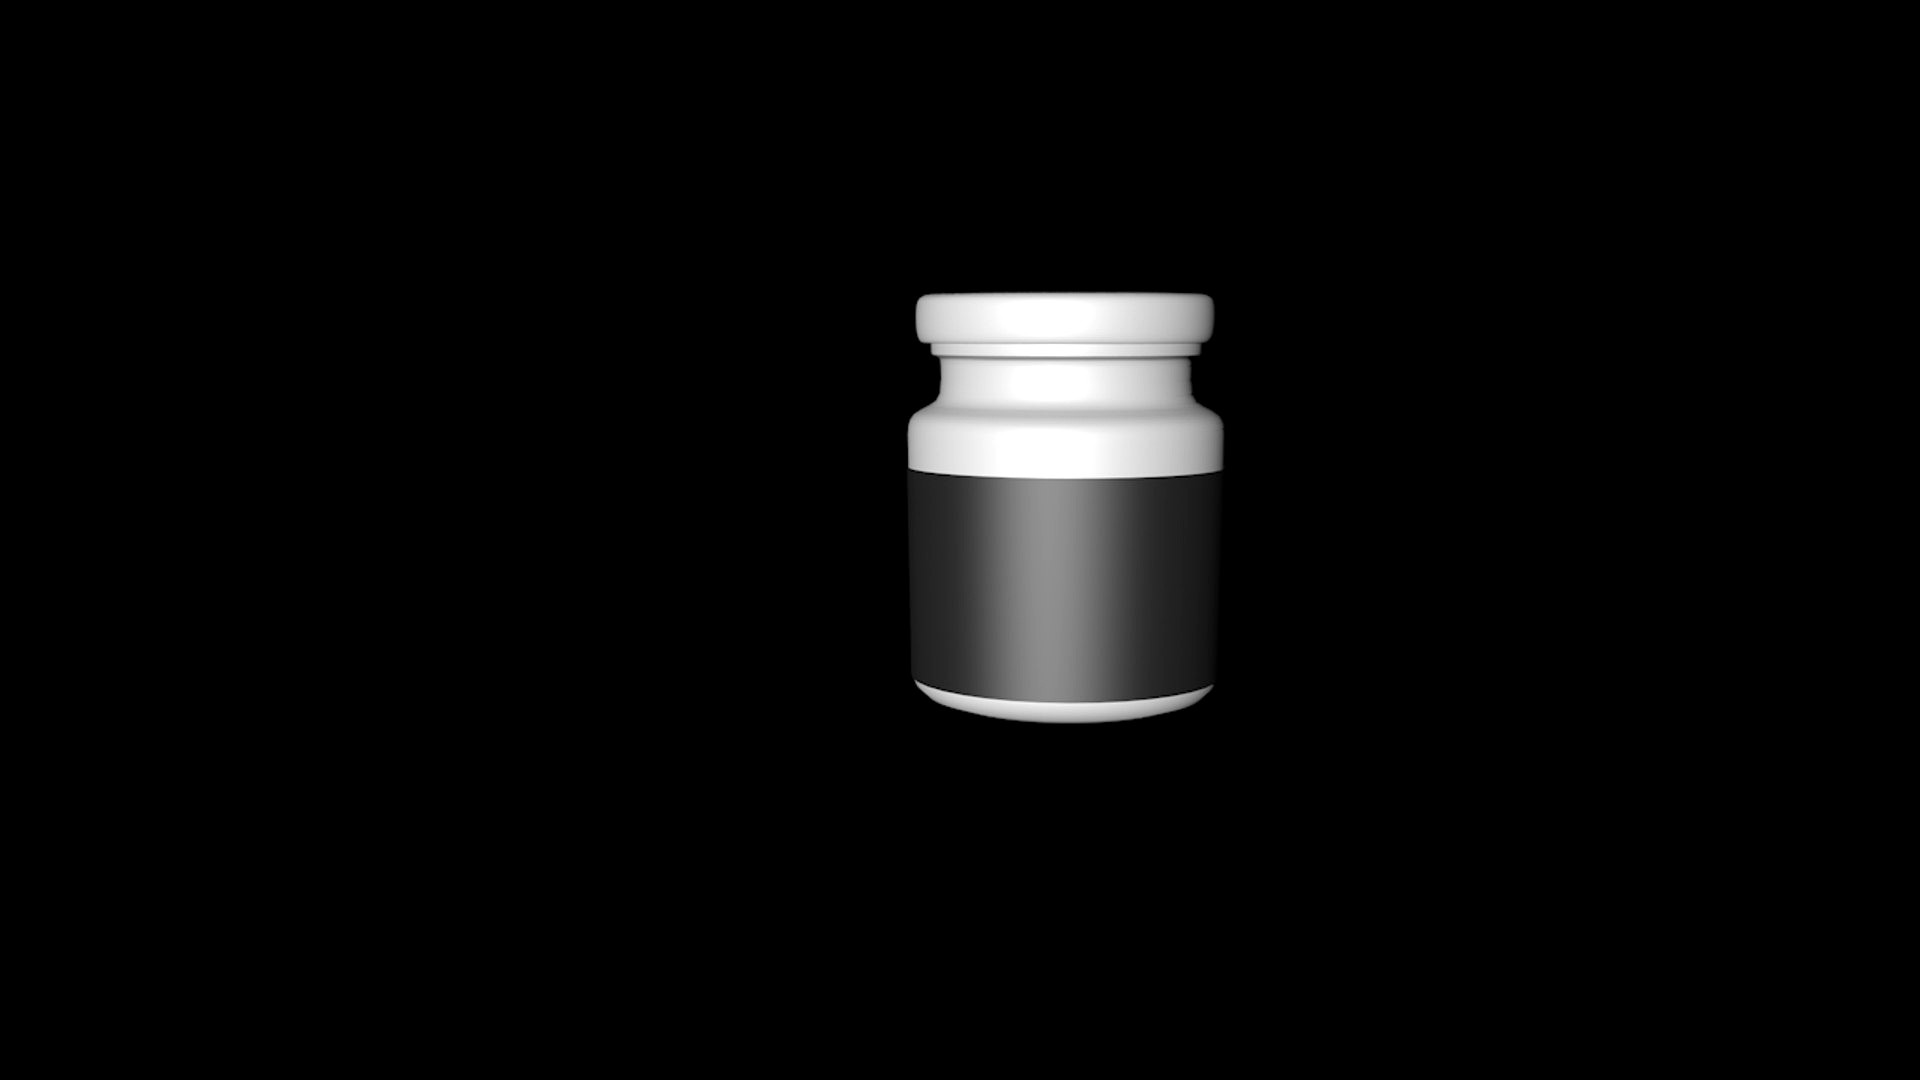 Glass jar with metal lid - mini 3D model